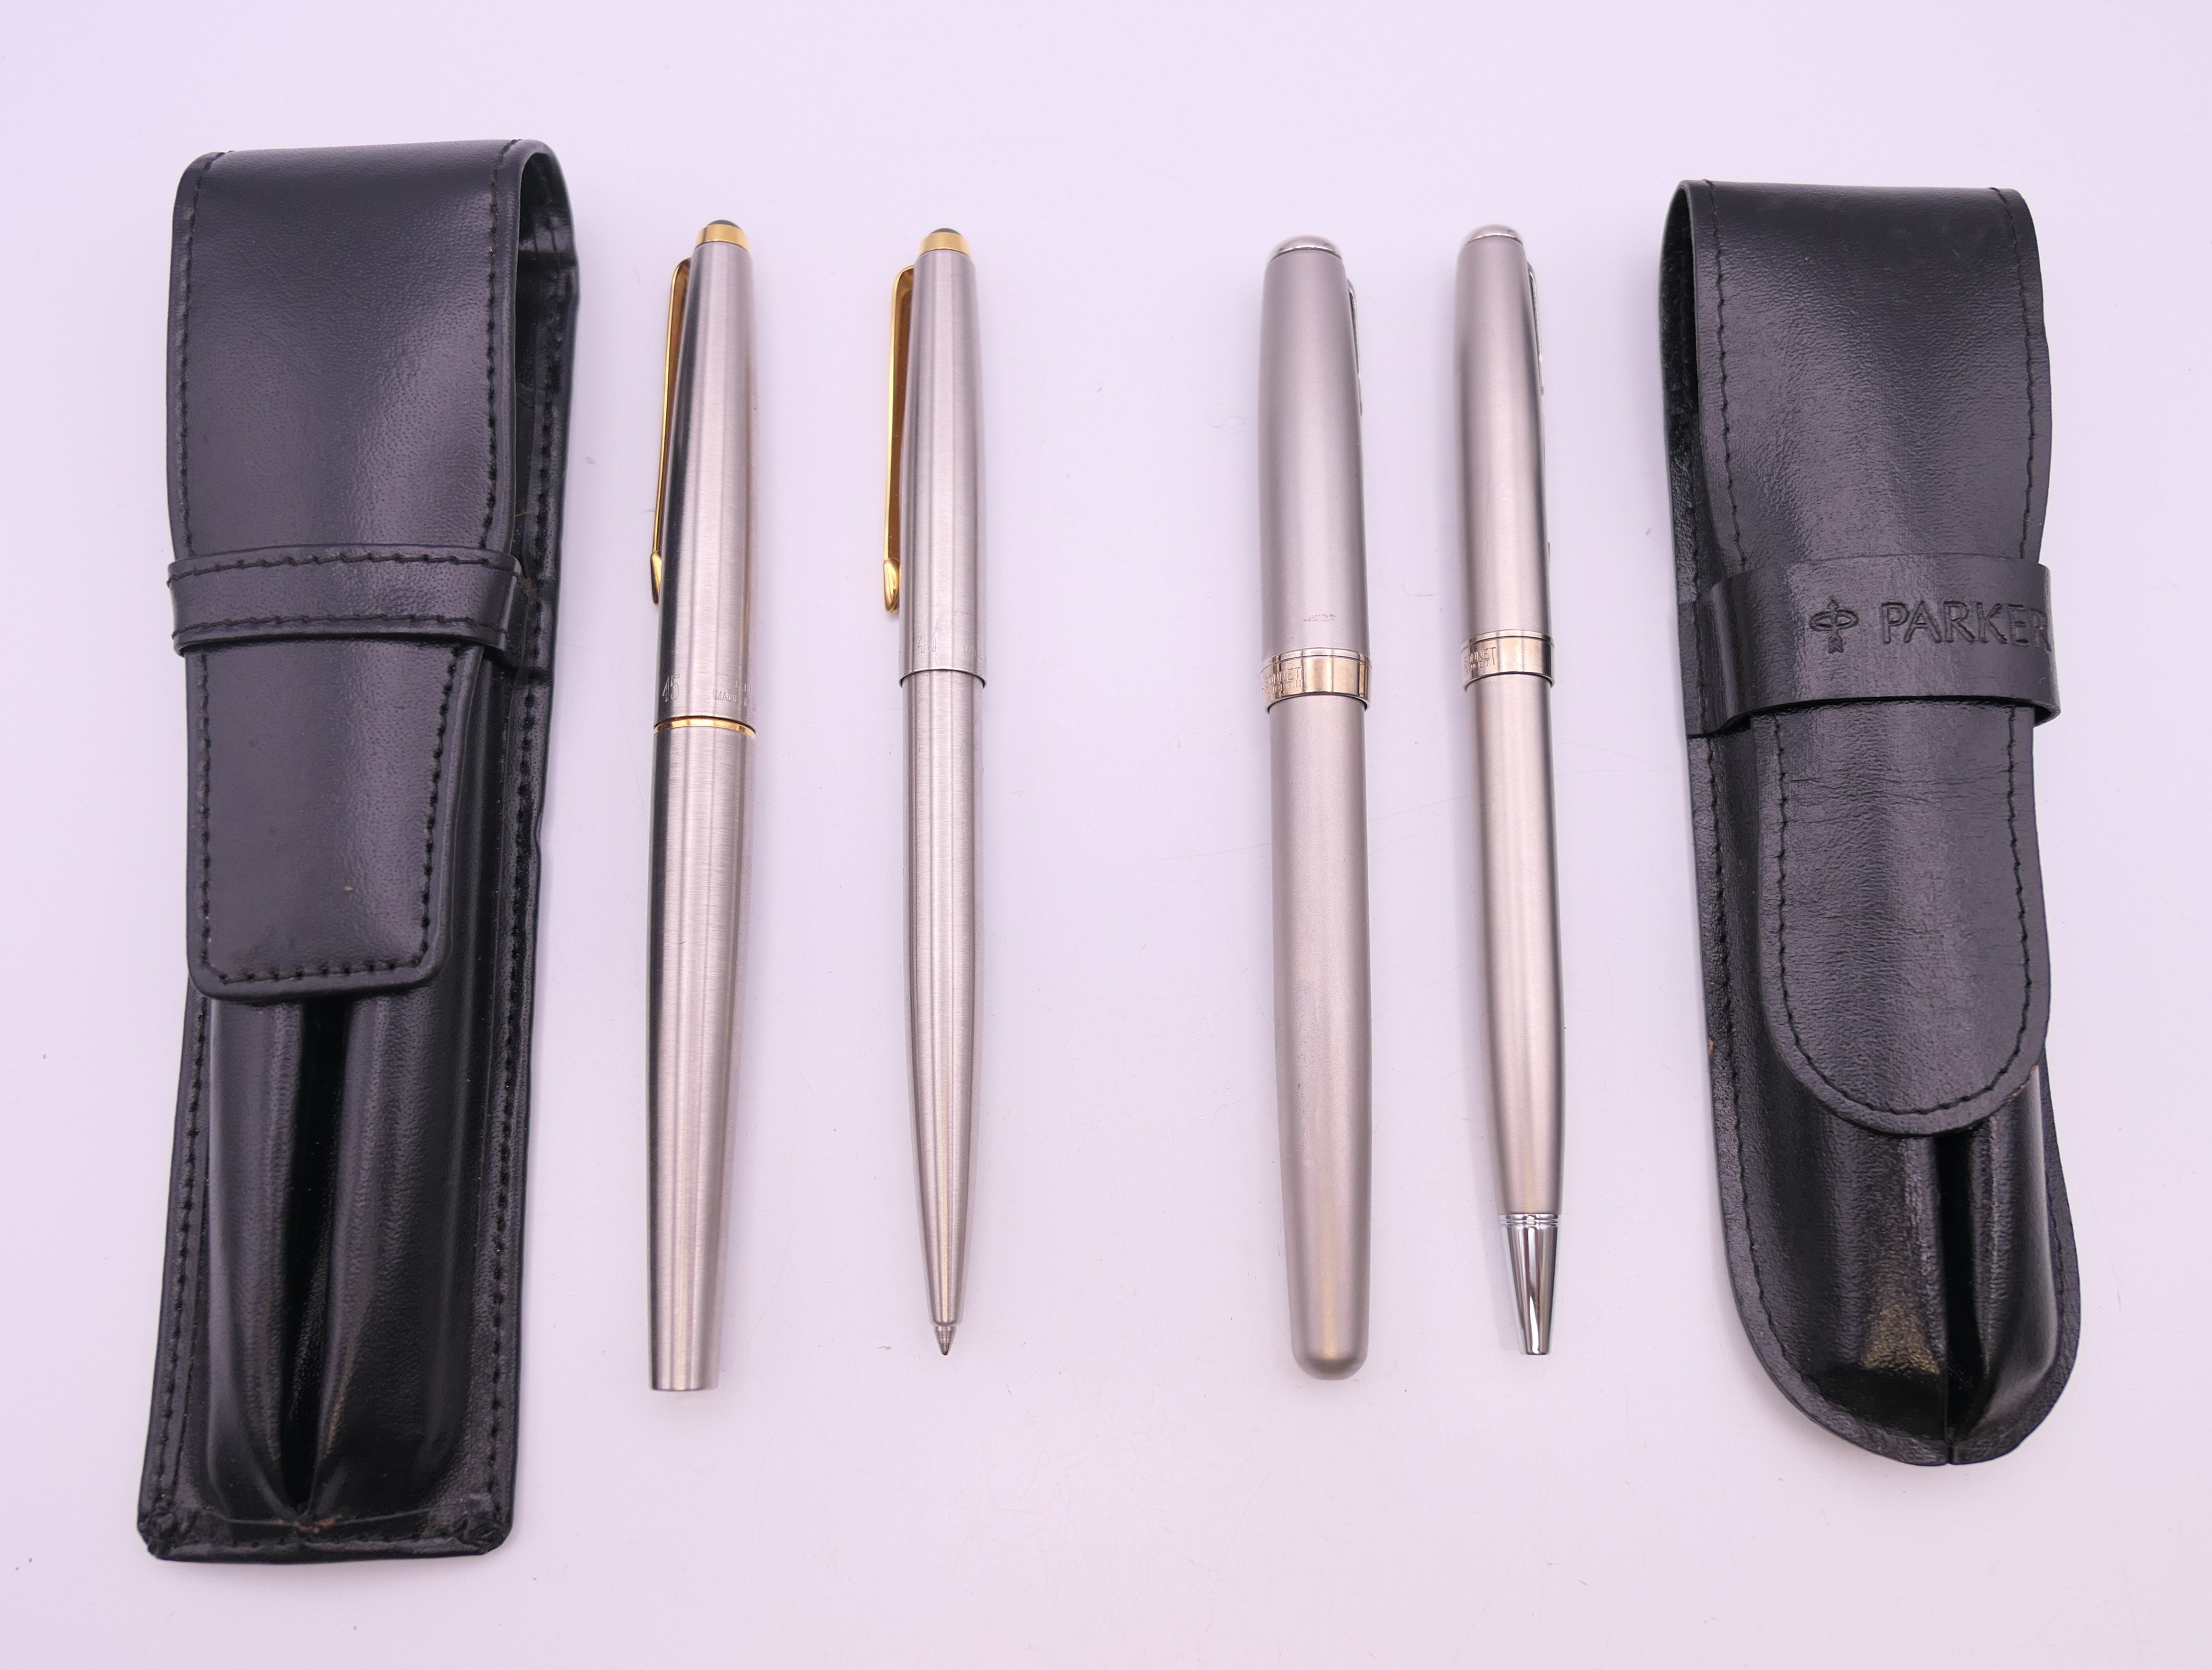 Four various Parker pens.